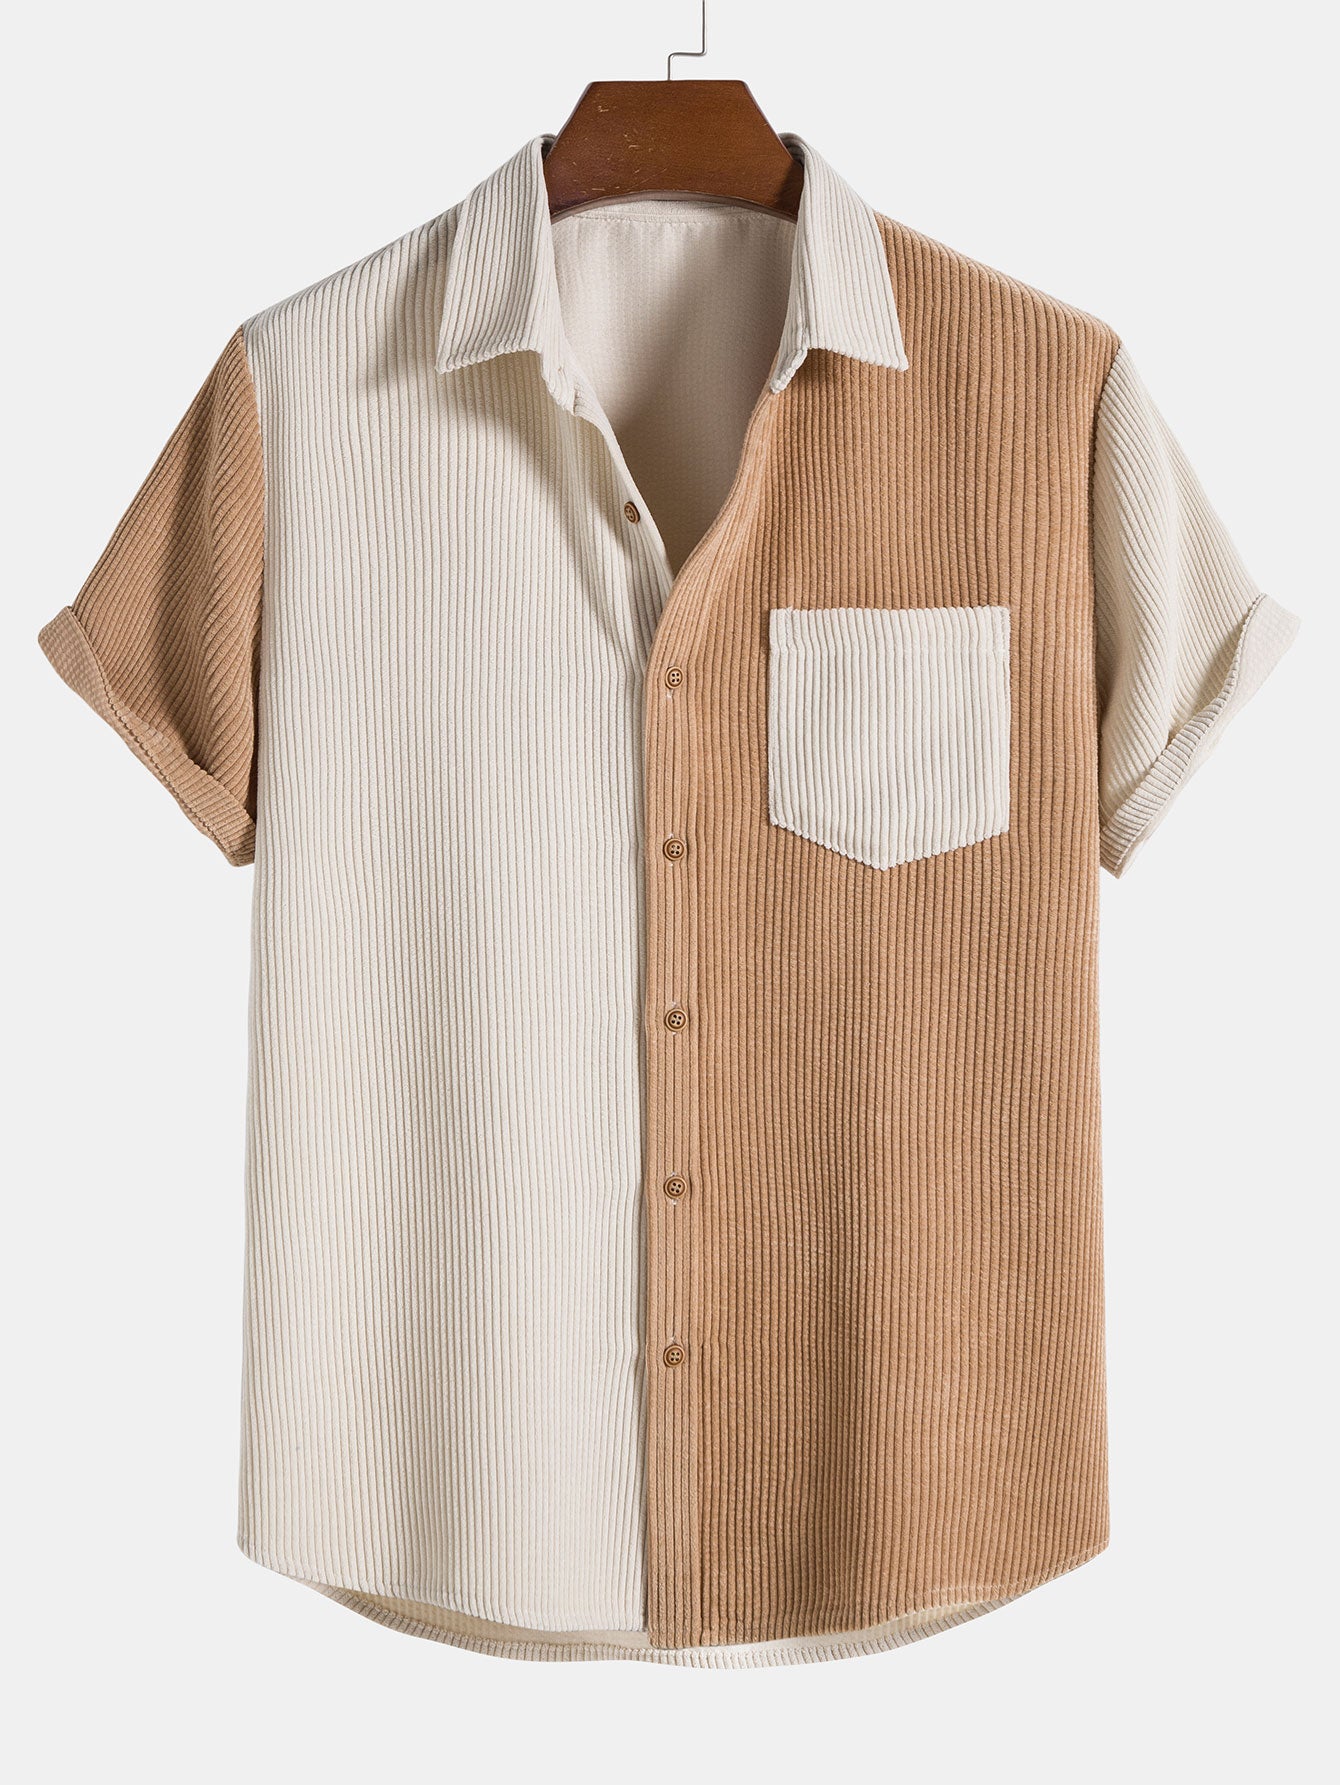 Two Tone Corduroy Button Up Shirt & Shorts